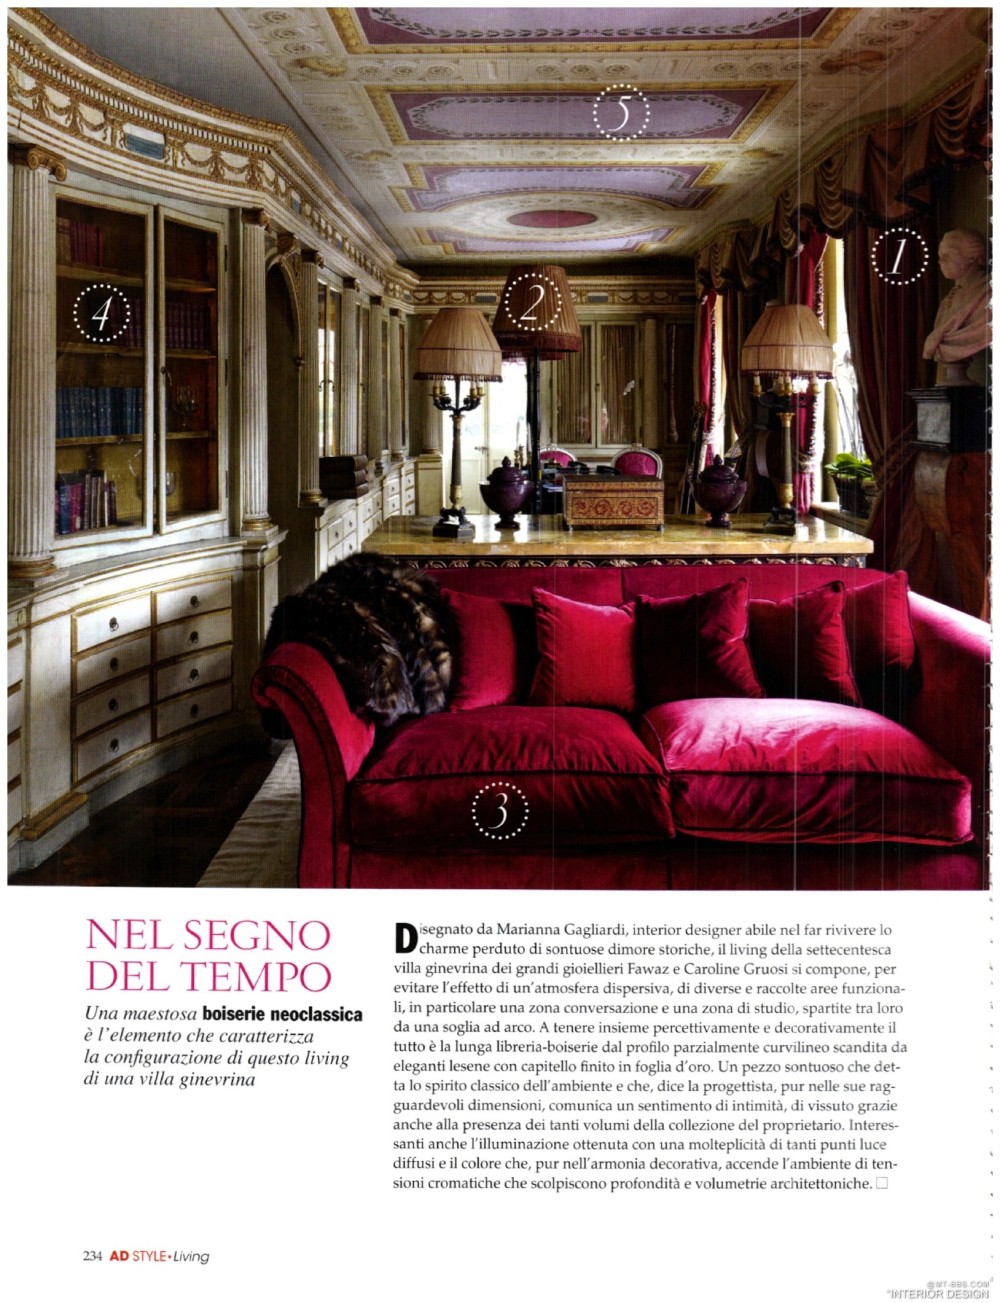 意大利AD 杂志 2012年全年JPG高清版本 全免（上传完毕）_0010.jpg